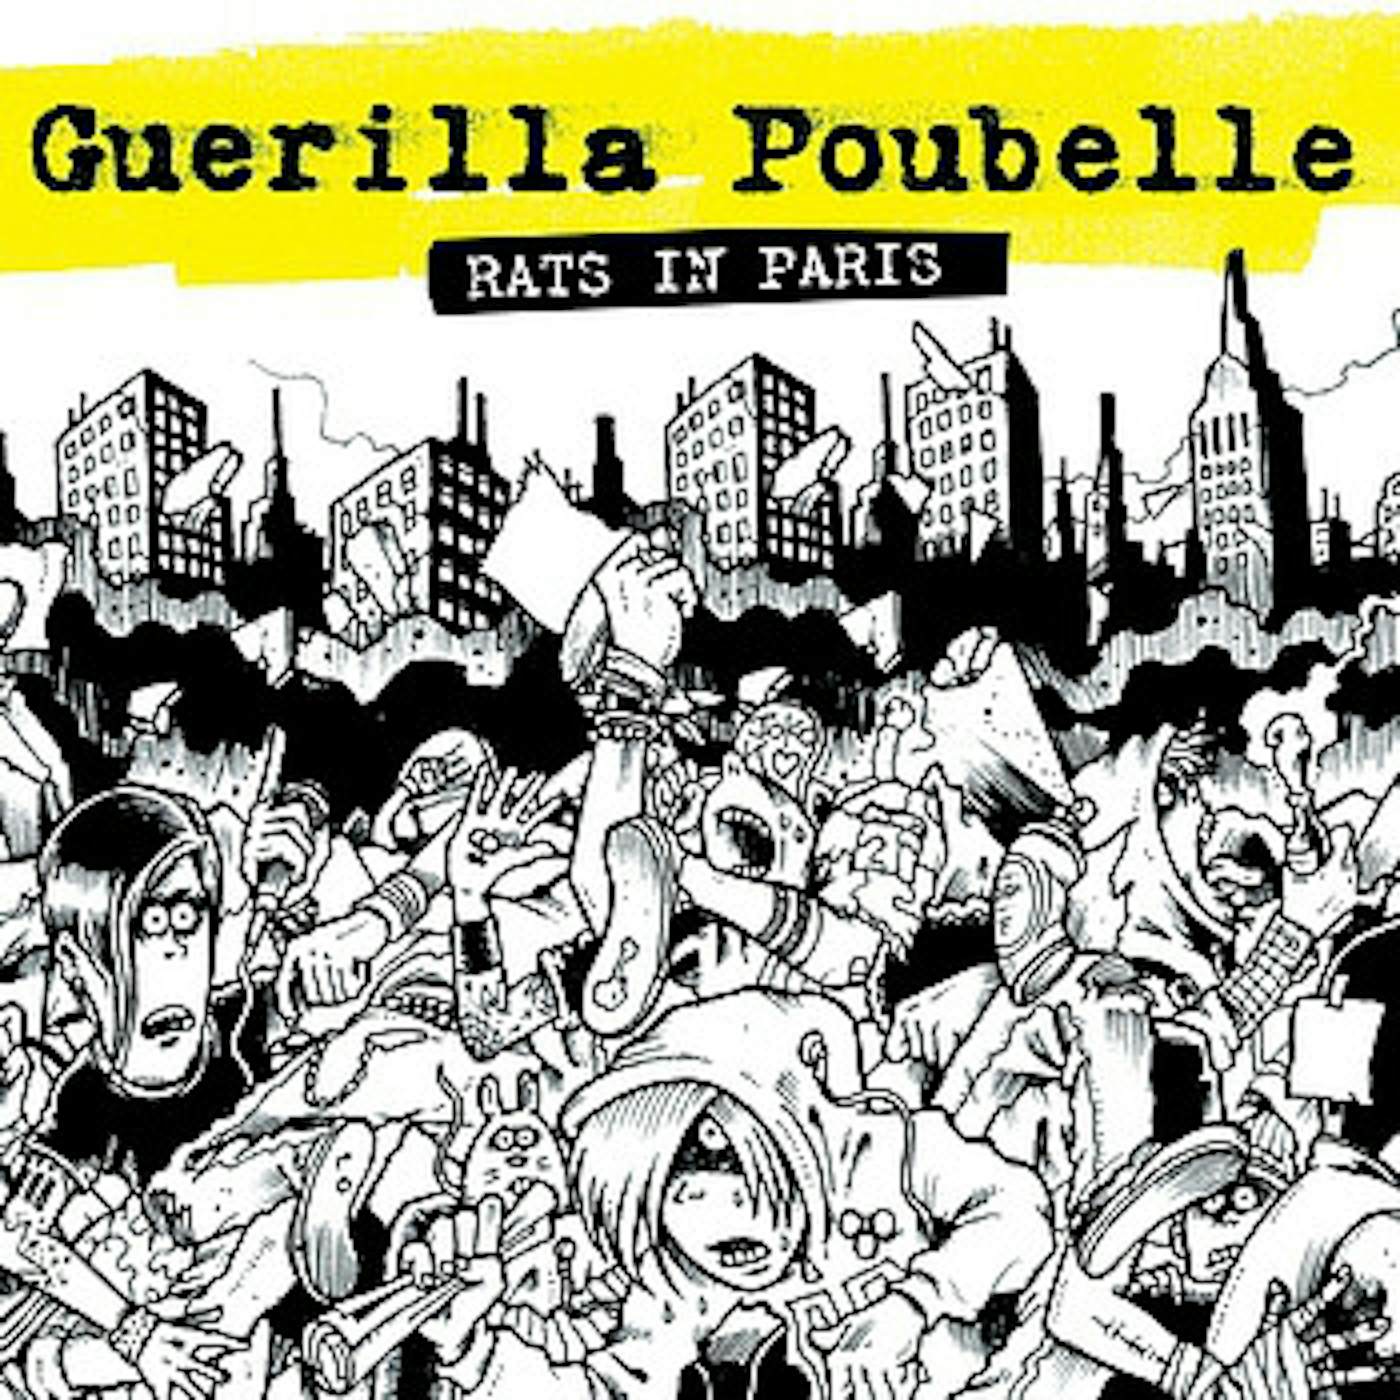 Guerilla Poubelle RATS IN PARIS Vinyl Record